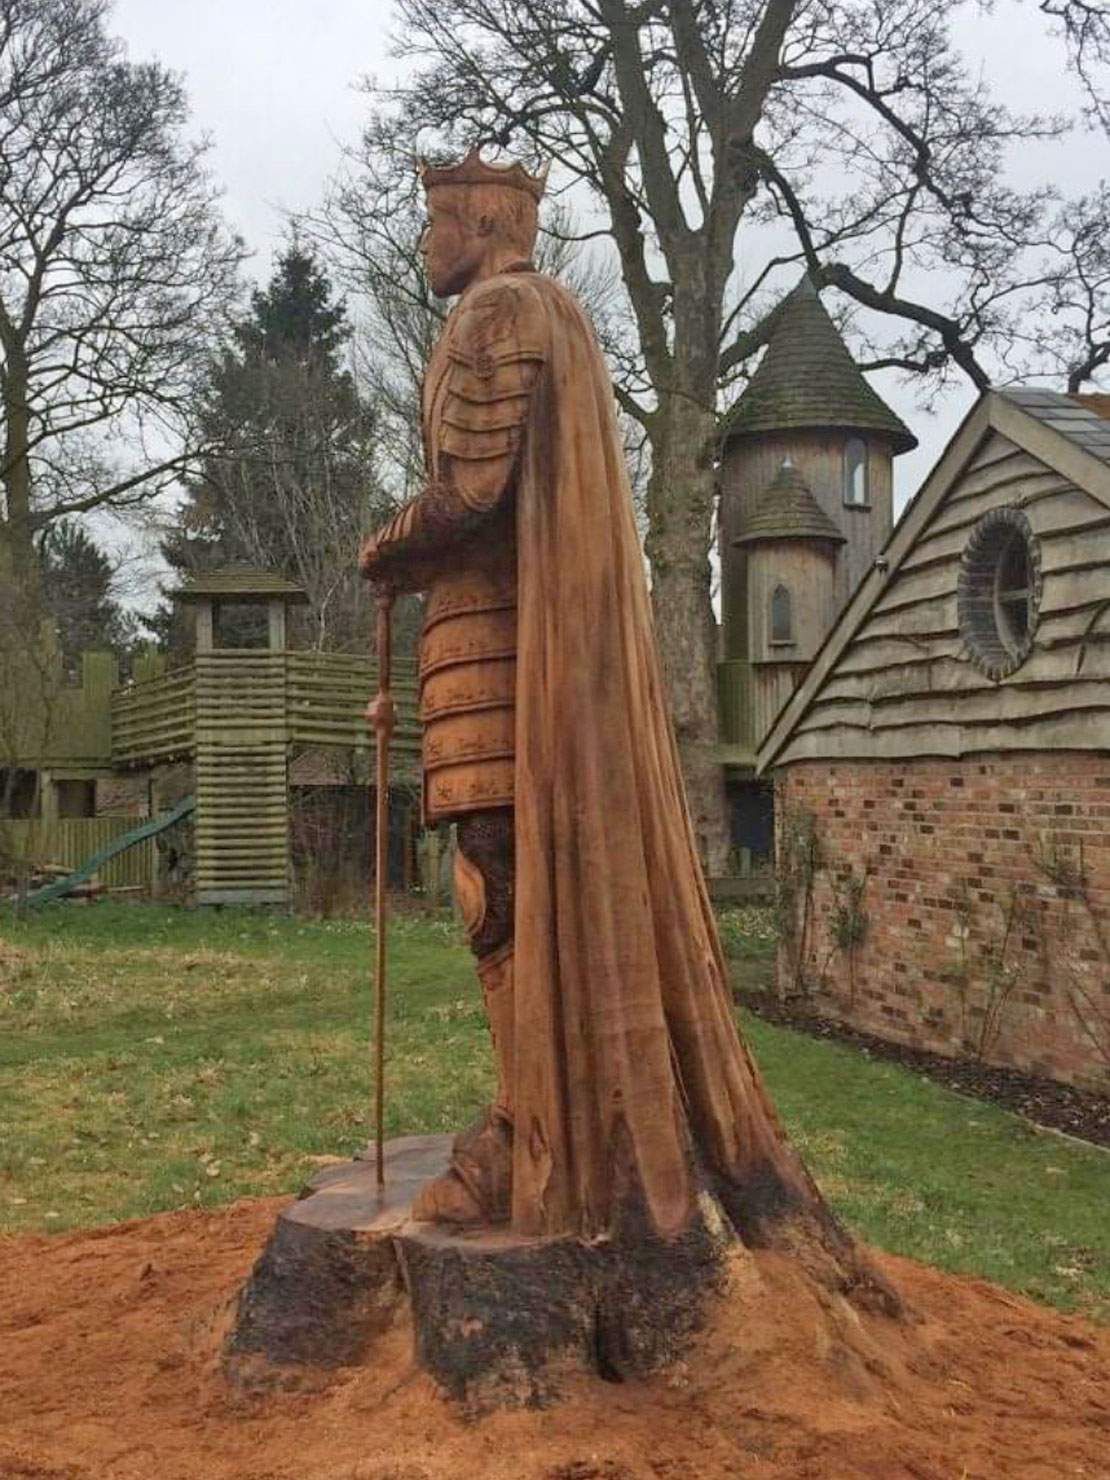 King Arthur wooden sculpture by Matthew Crabb